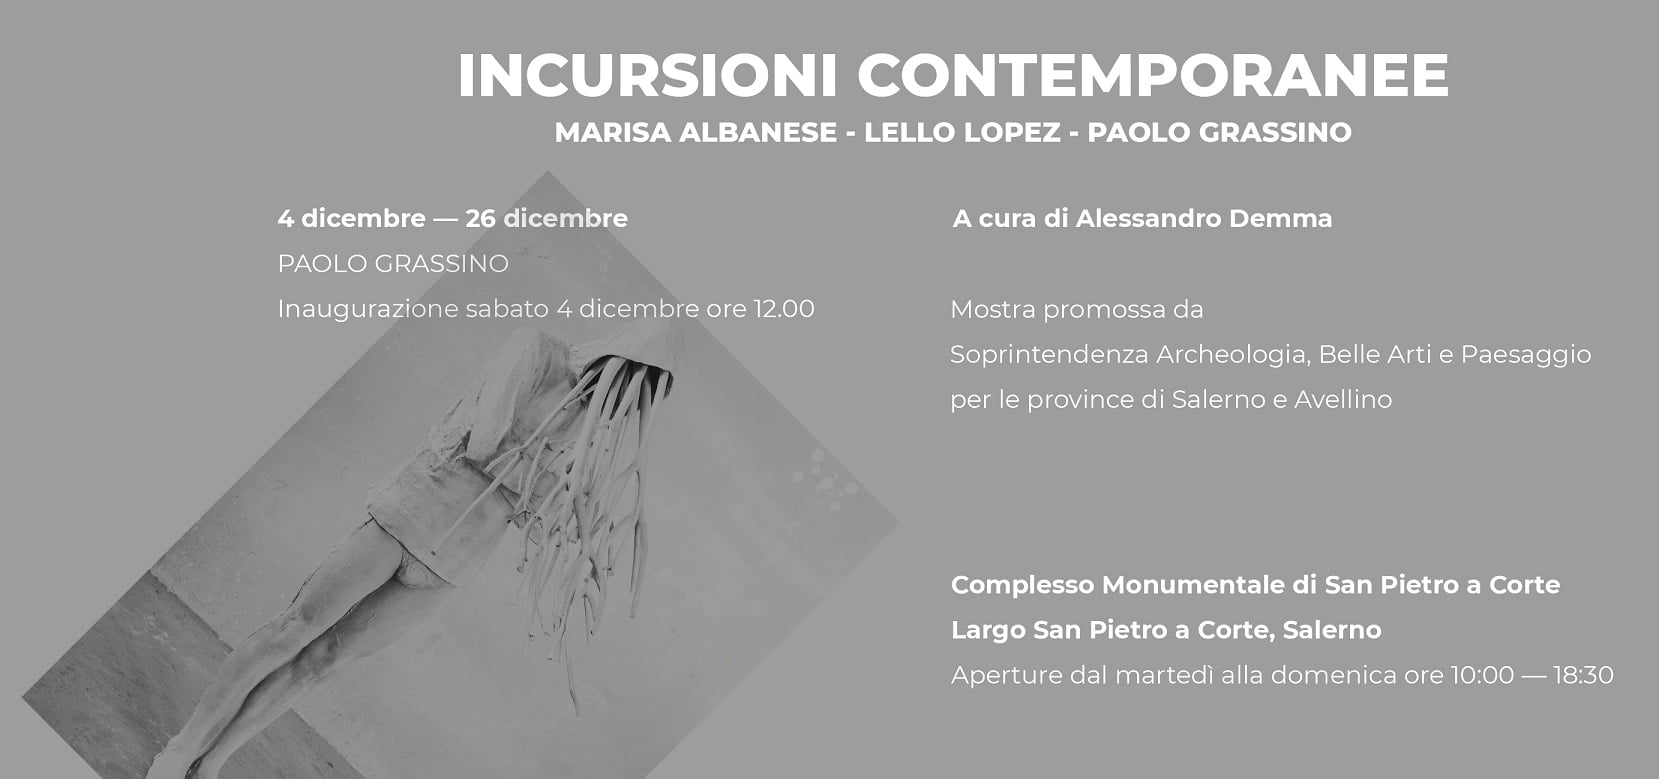 Salerno: Soprintendenza, presentazione cortocircuito visivo di Paolo Grassino a San Pietro a Corte